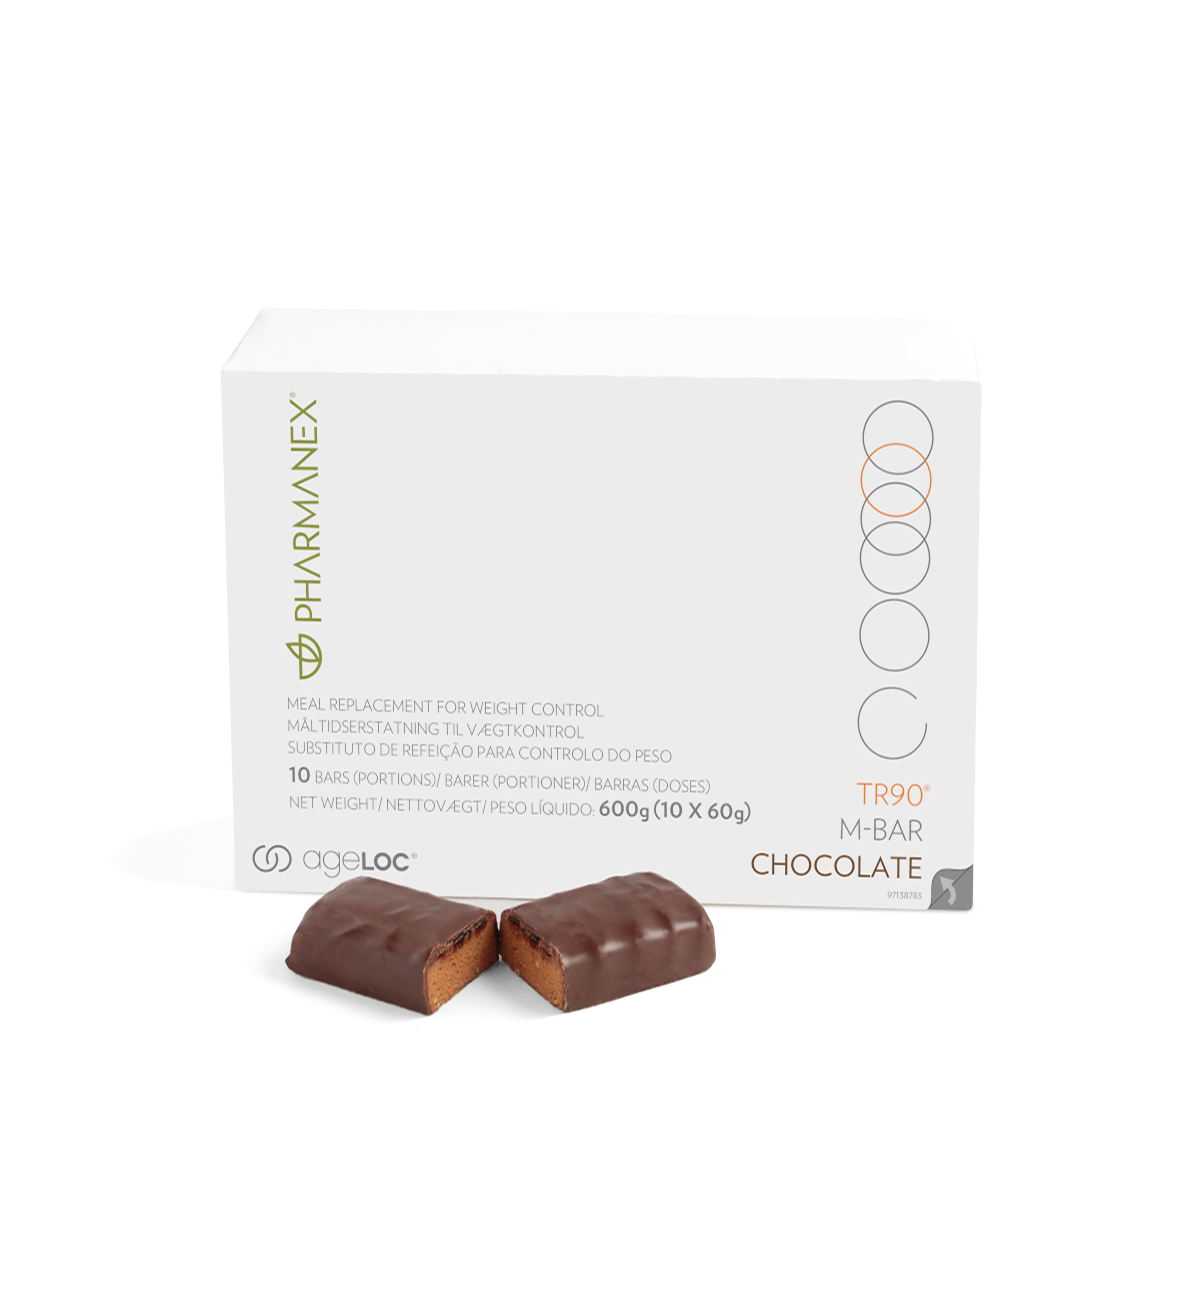 pharmanex-tr90-m-bar-chocolate-30-pack